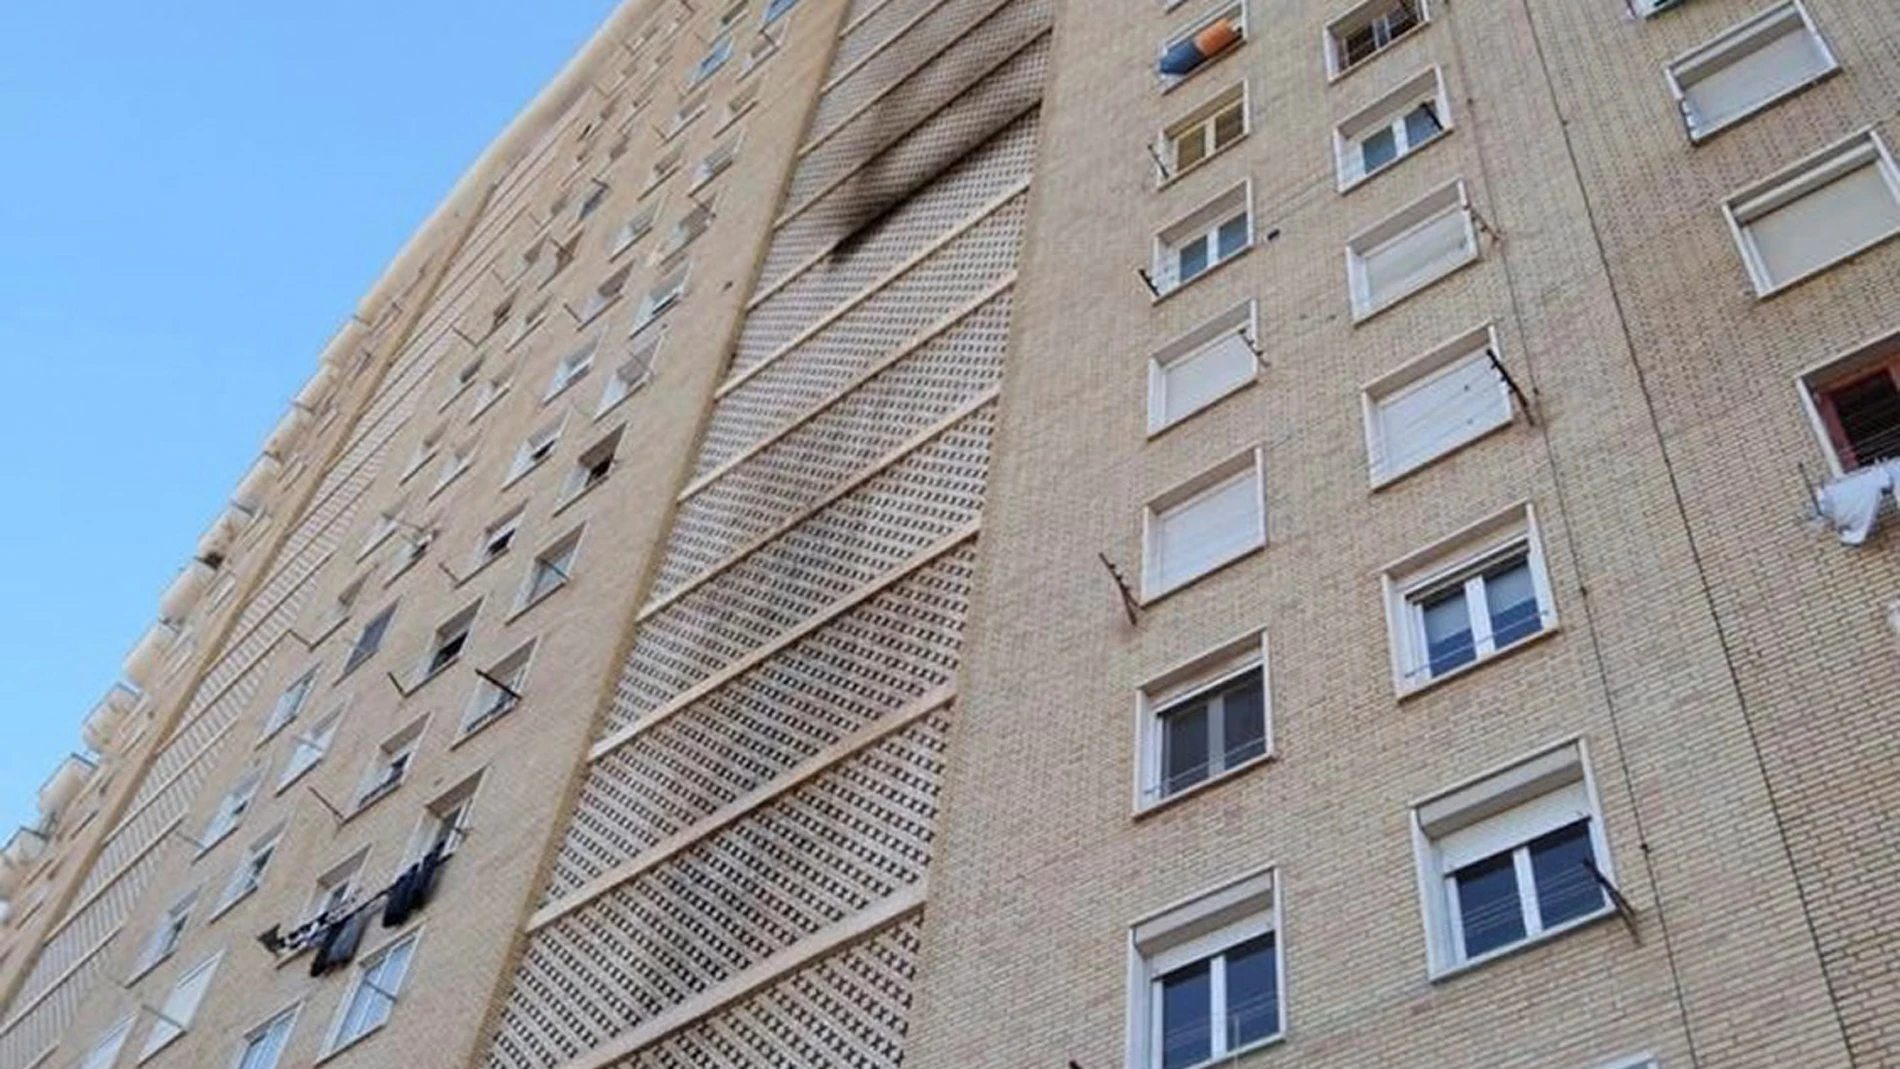 Vista del la fachada del edificio del barrio de l'Albufereta de Alicante, en el que una mujer de 80 años ha fallecido este sábado al incendiarse la vivienda en la que residía